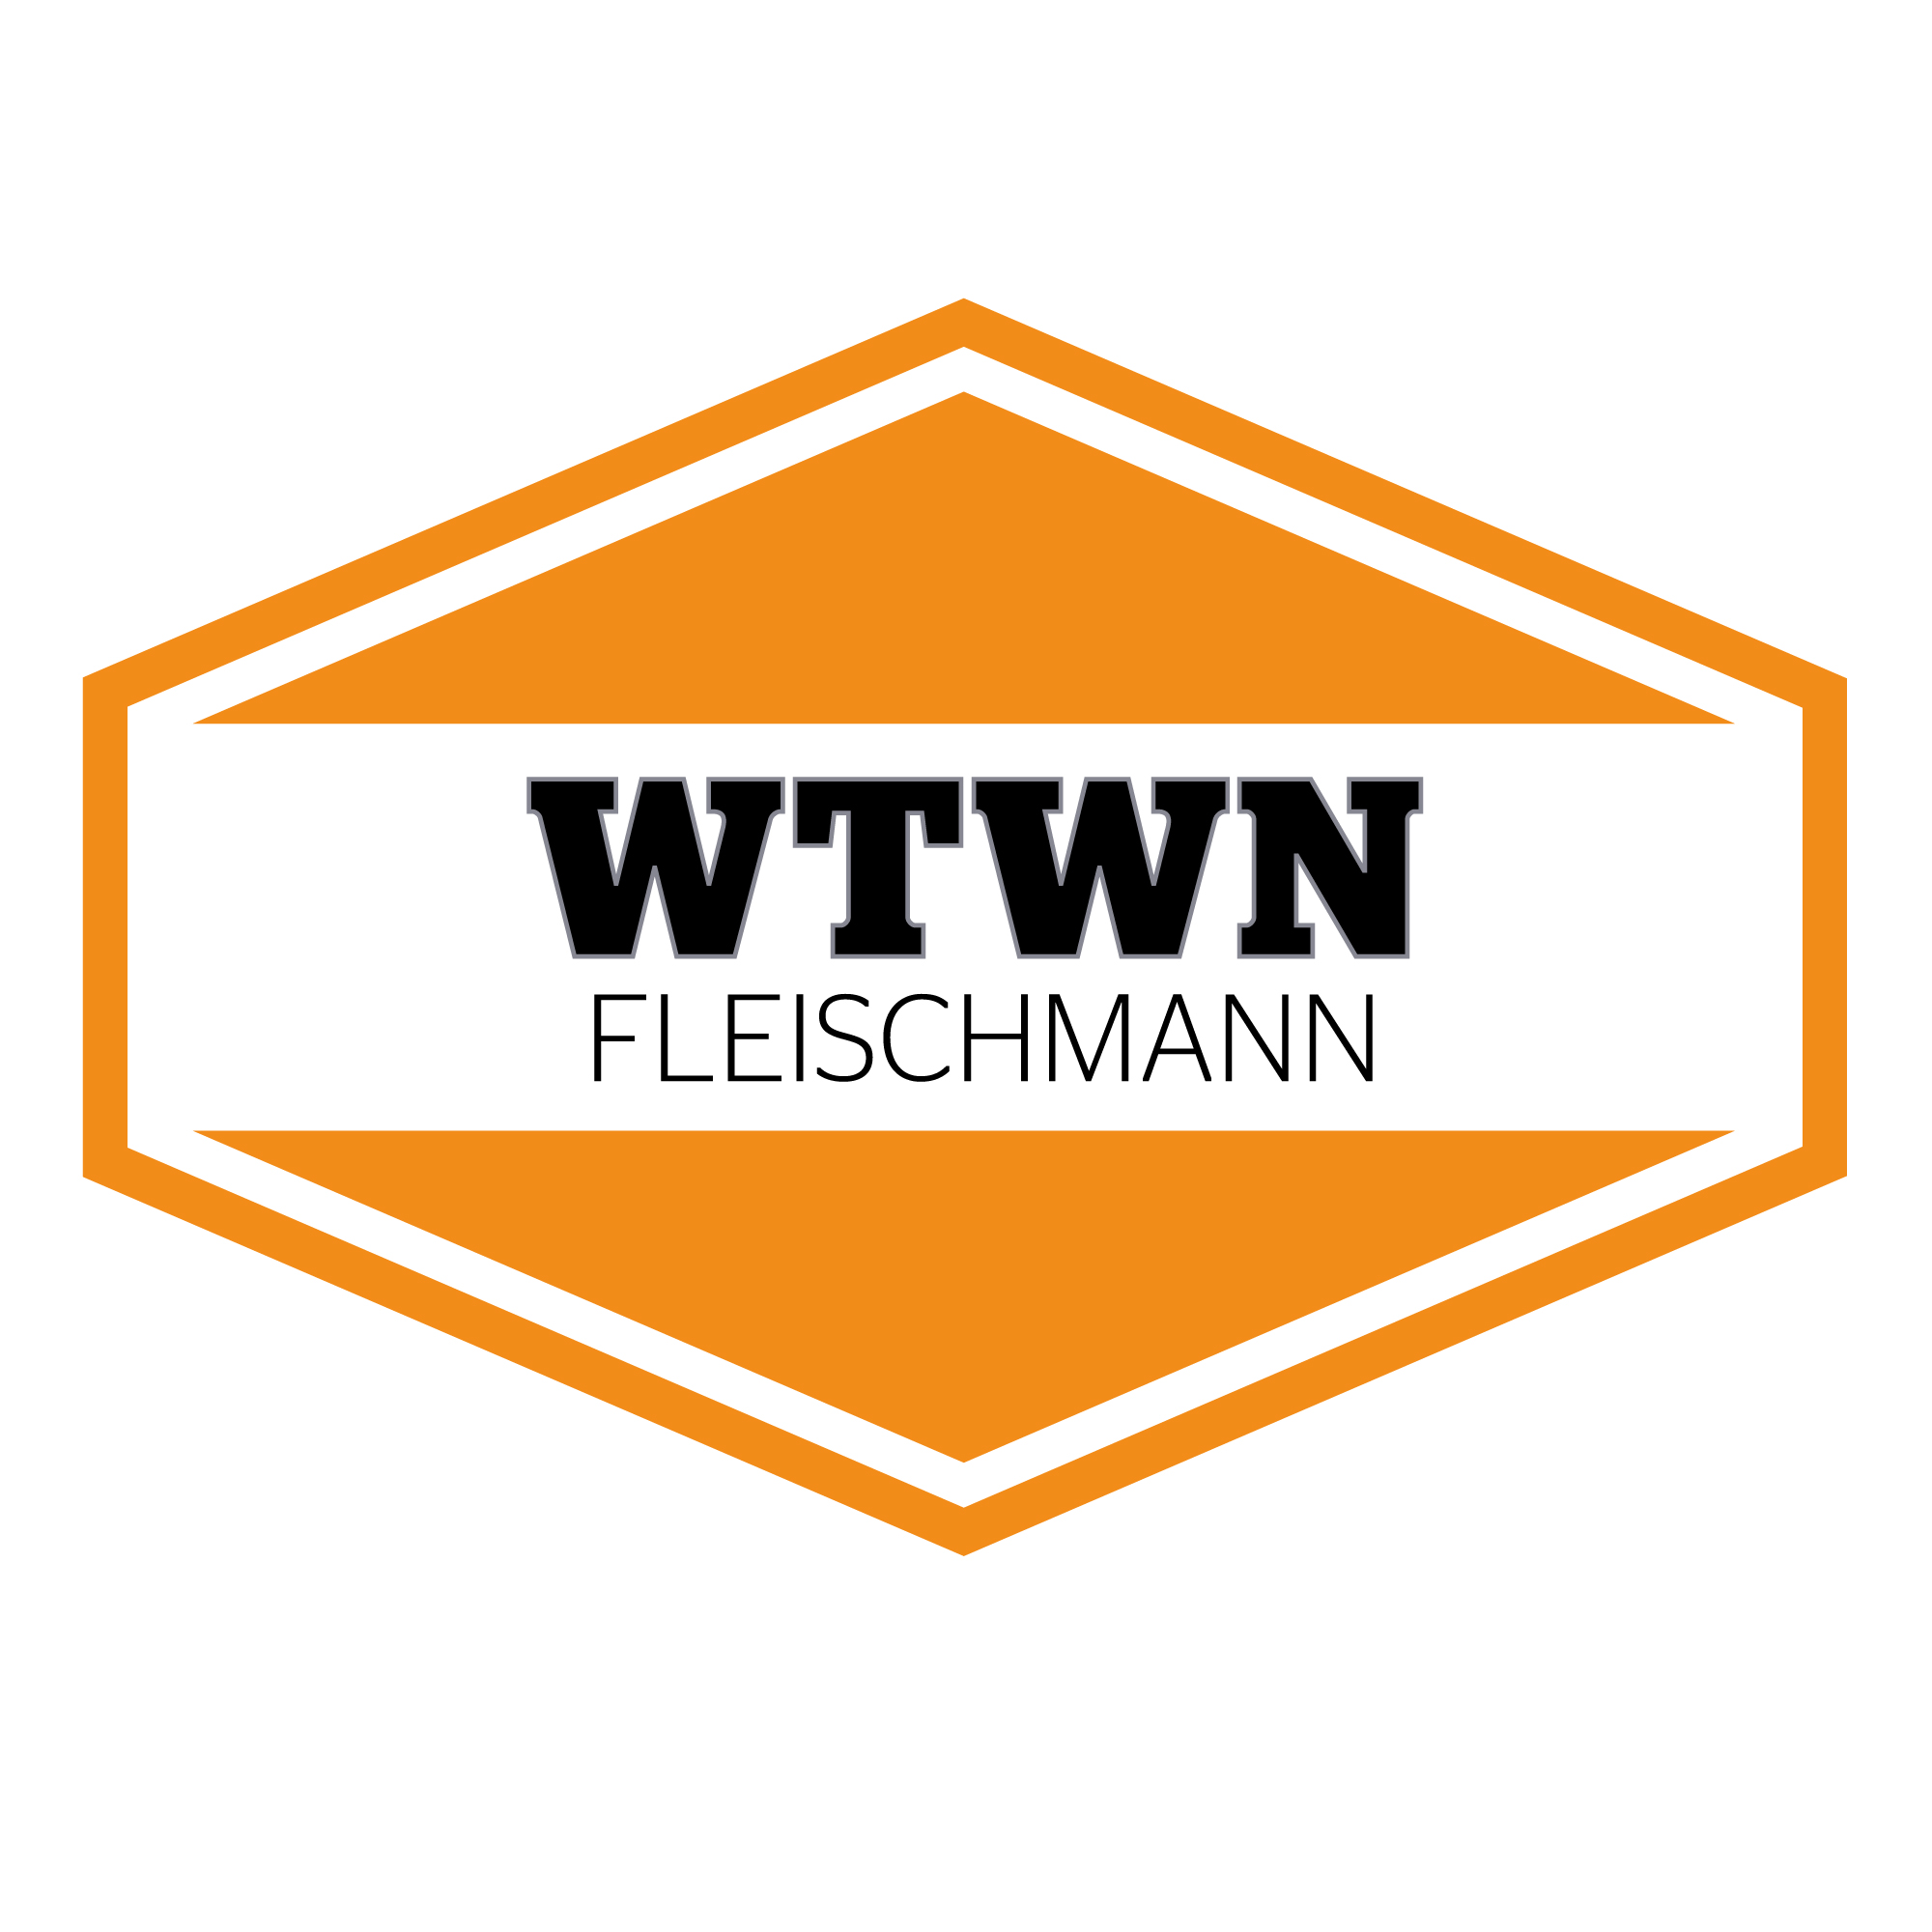 WTWN Fleischmann Steuerberatung